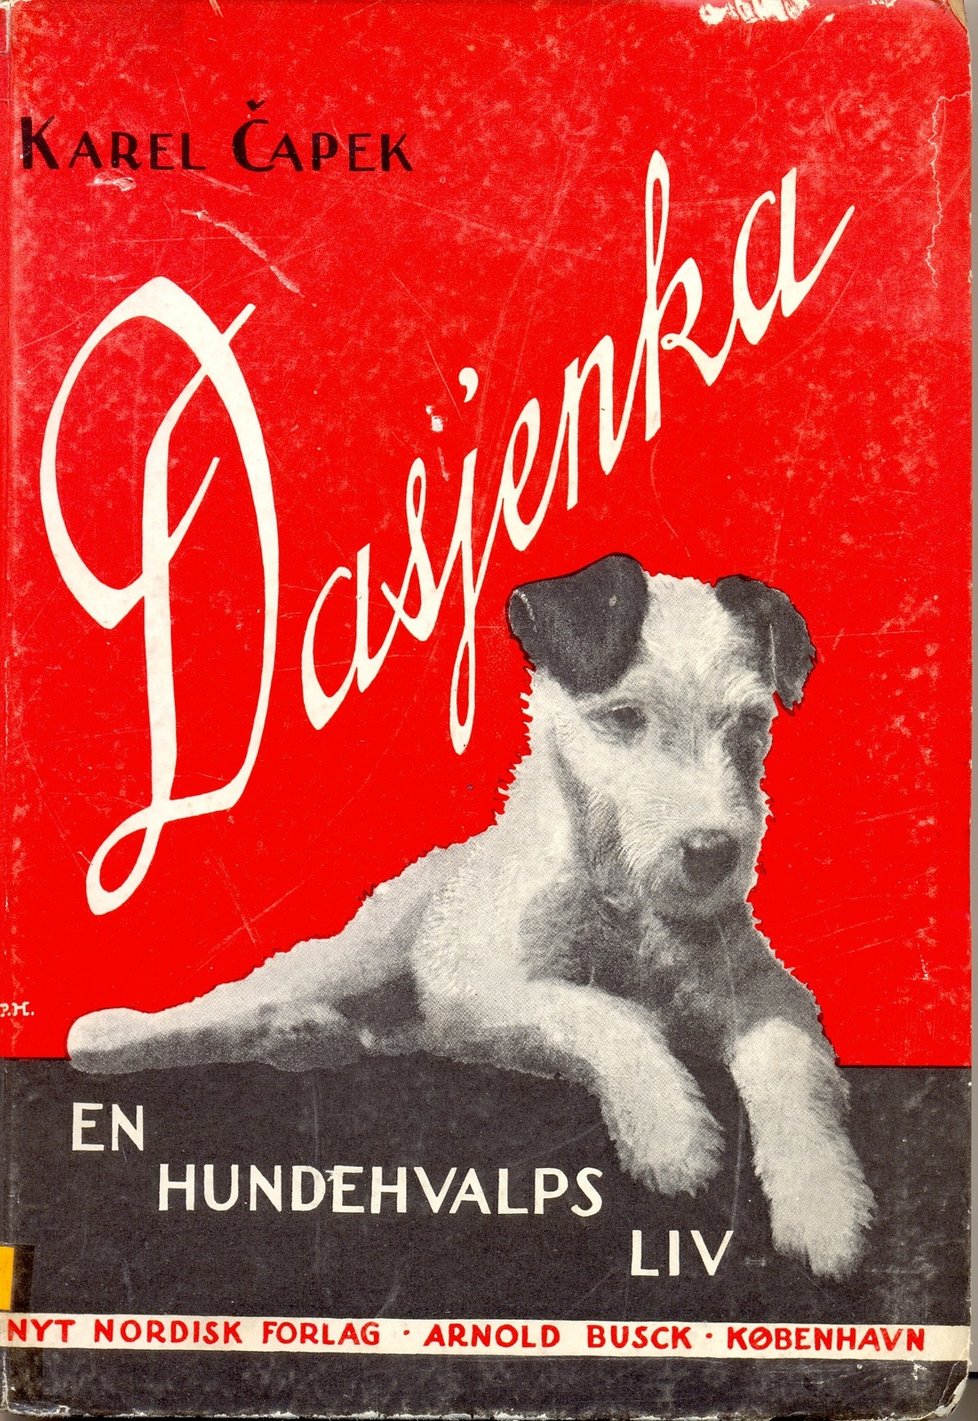 Dášeňka vyšla v mnoha překladech, takhle například vypadala norská verze knihy.